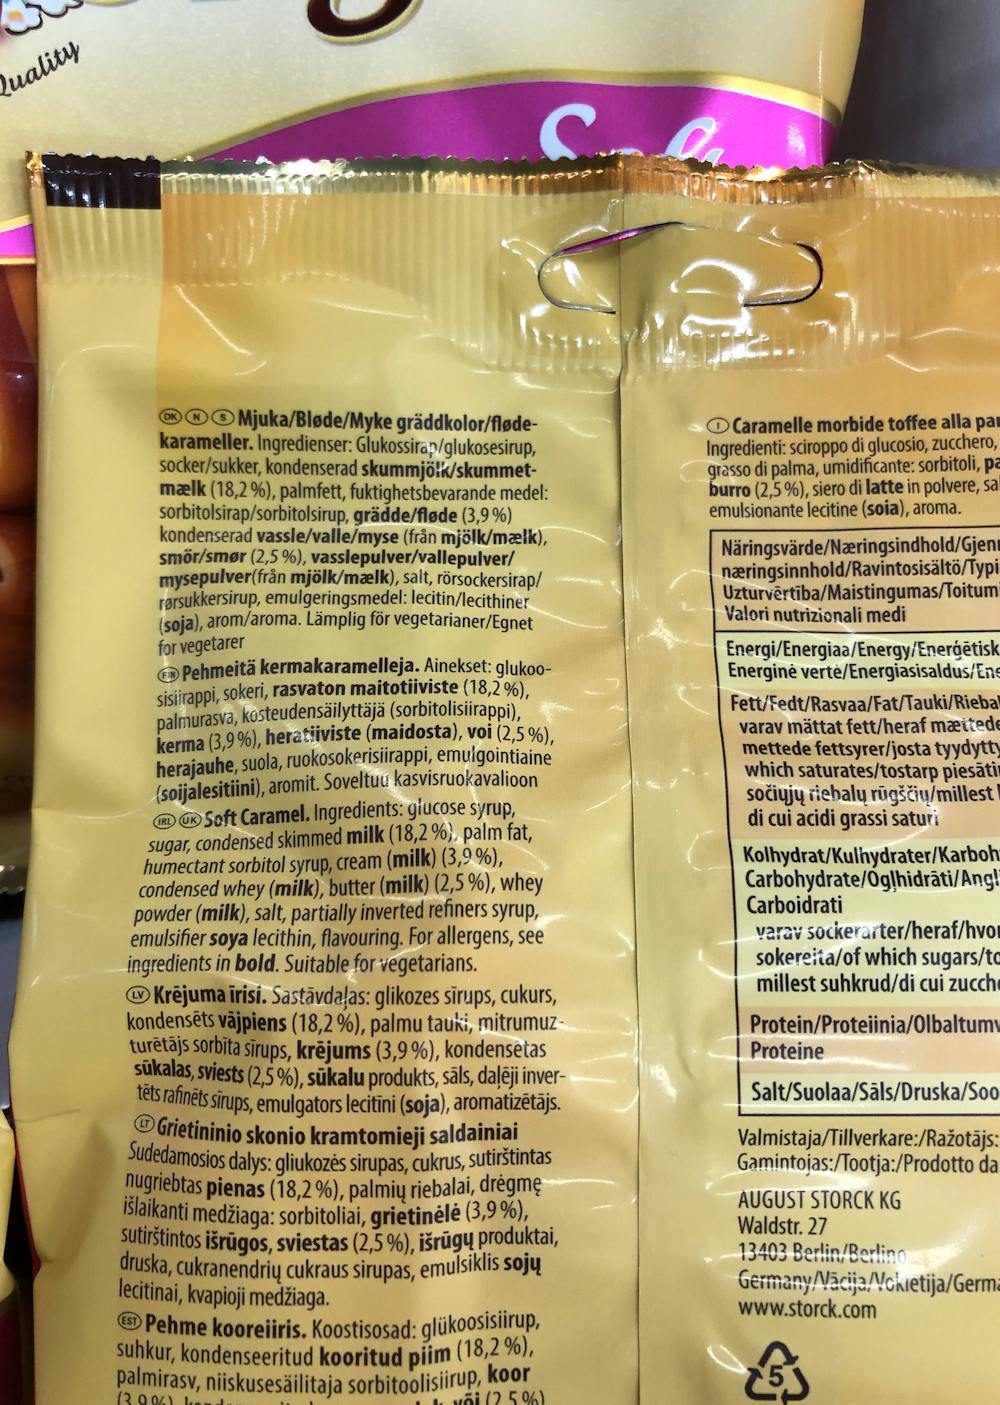 Ingredienslisten til Werther Werther`s original soft caramel